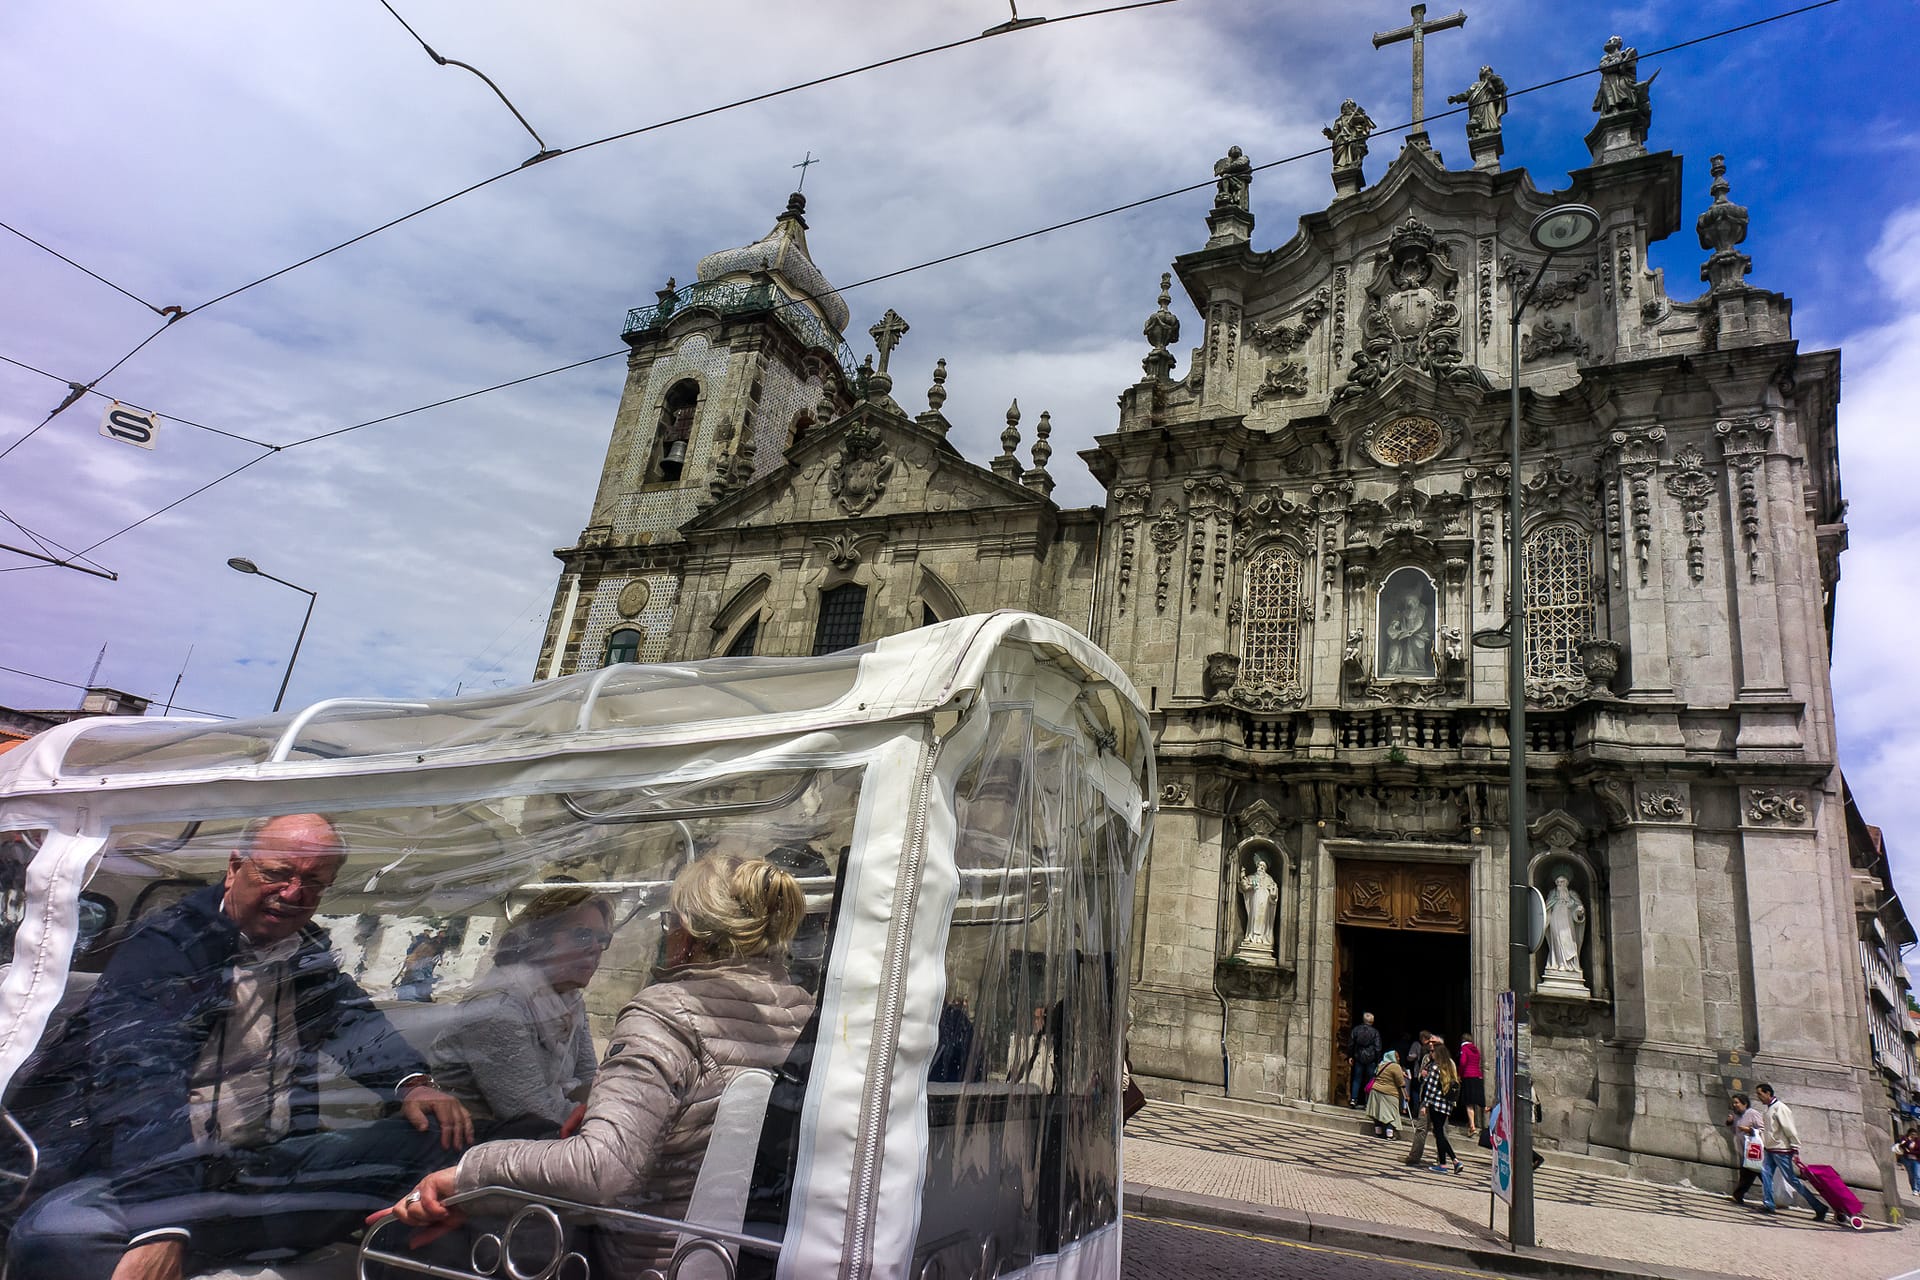 Tourists in tuk-tuk in front of Igreja do Carmo church